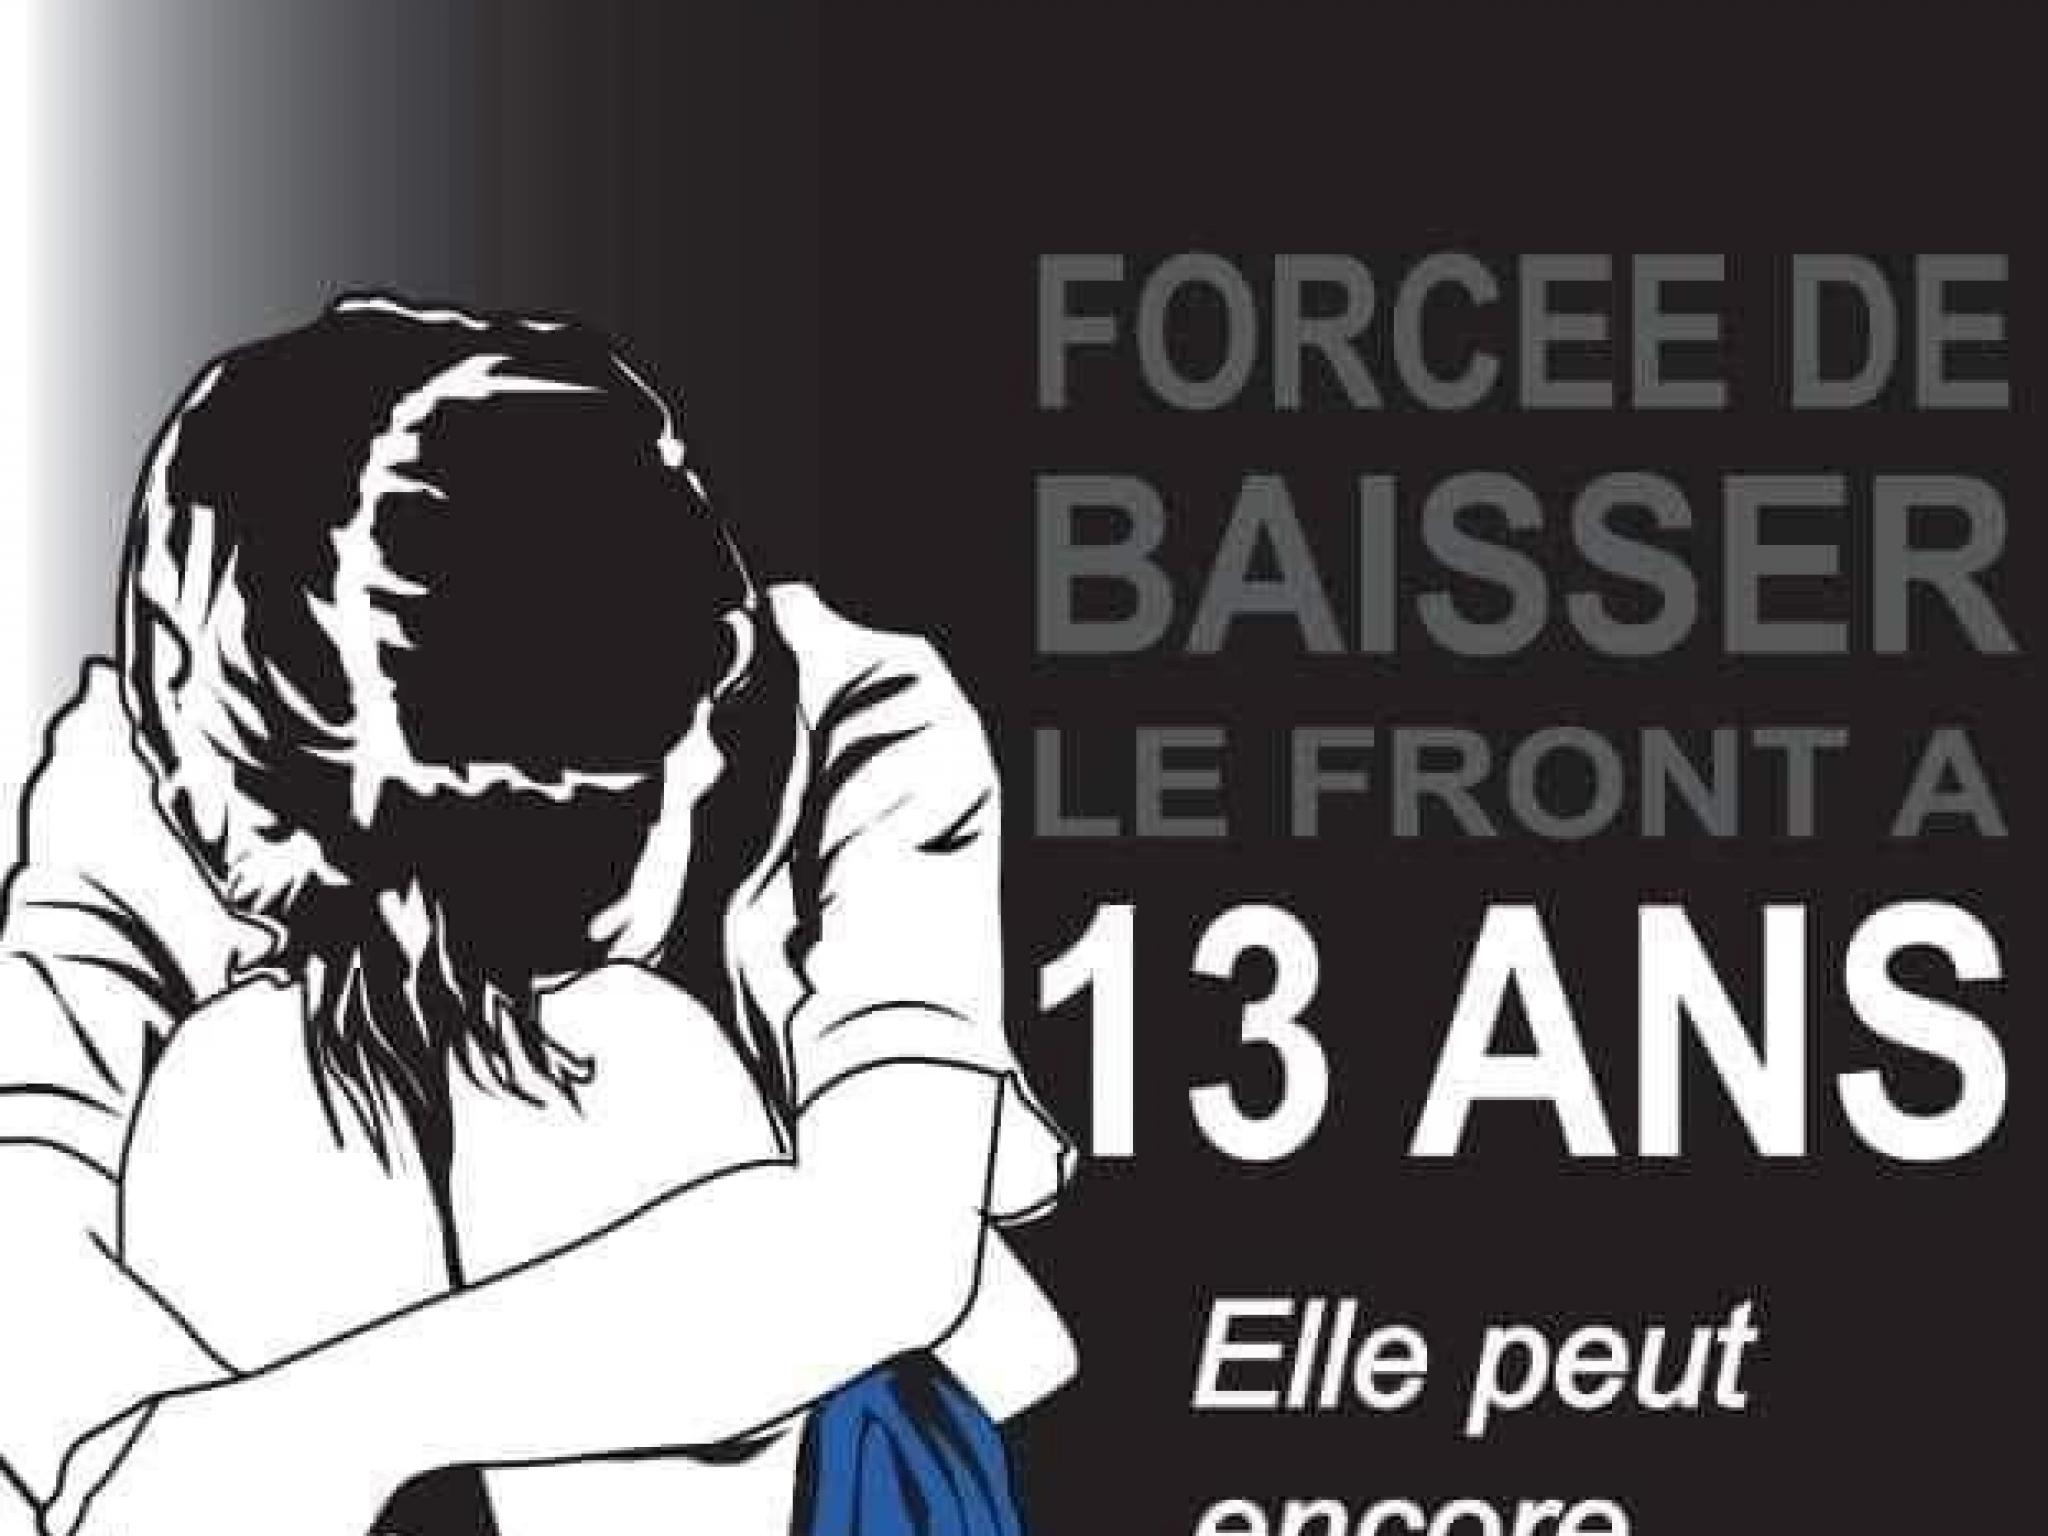 Affiche exploitée pendant la campagne de lutte contre le viol sur mineures